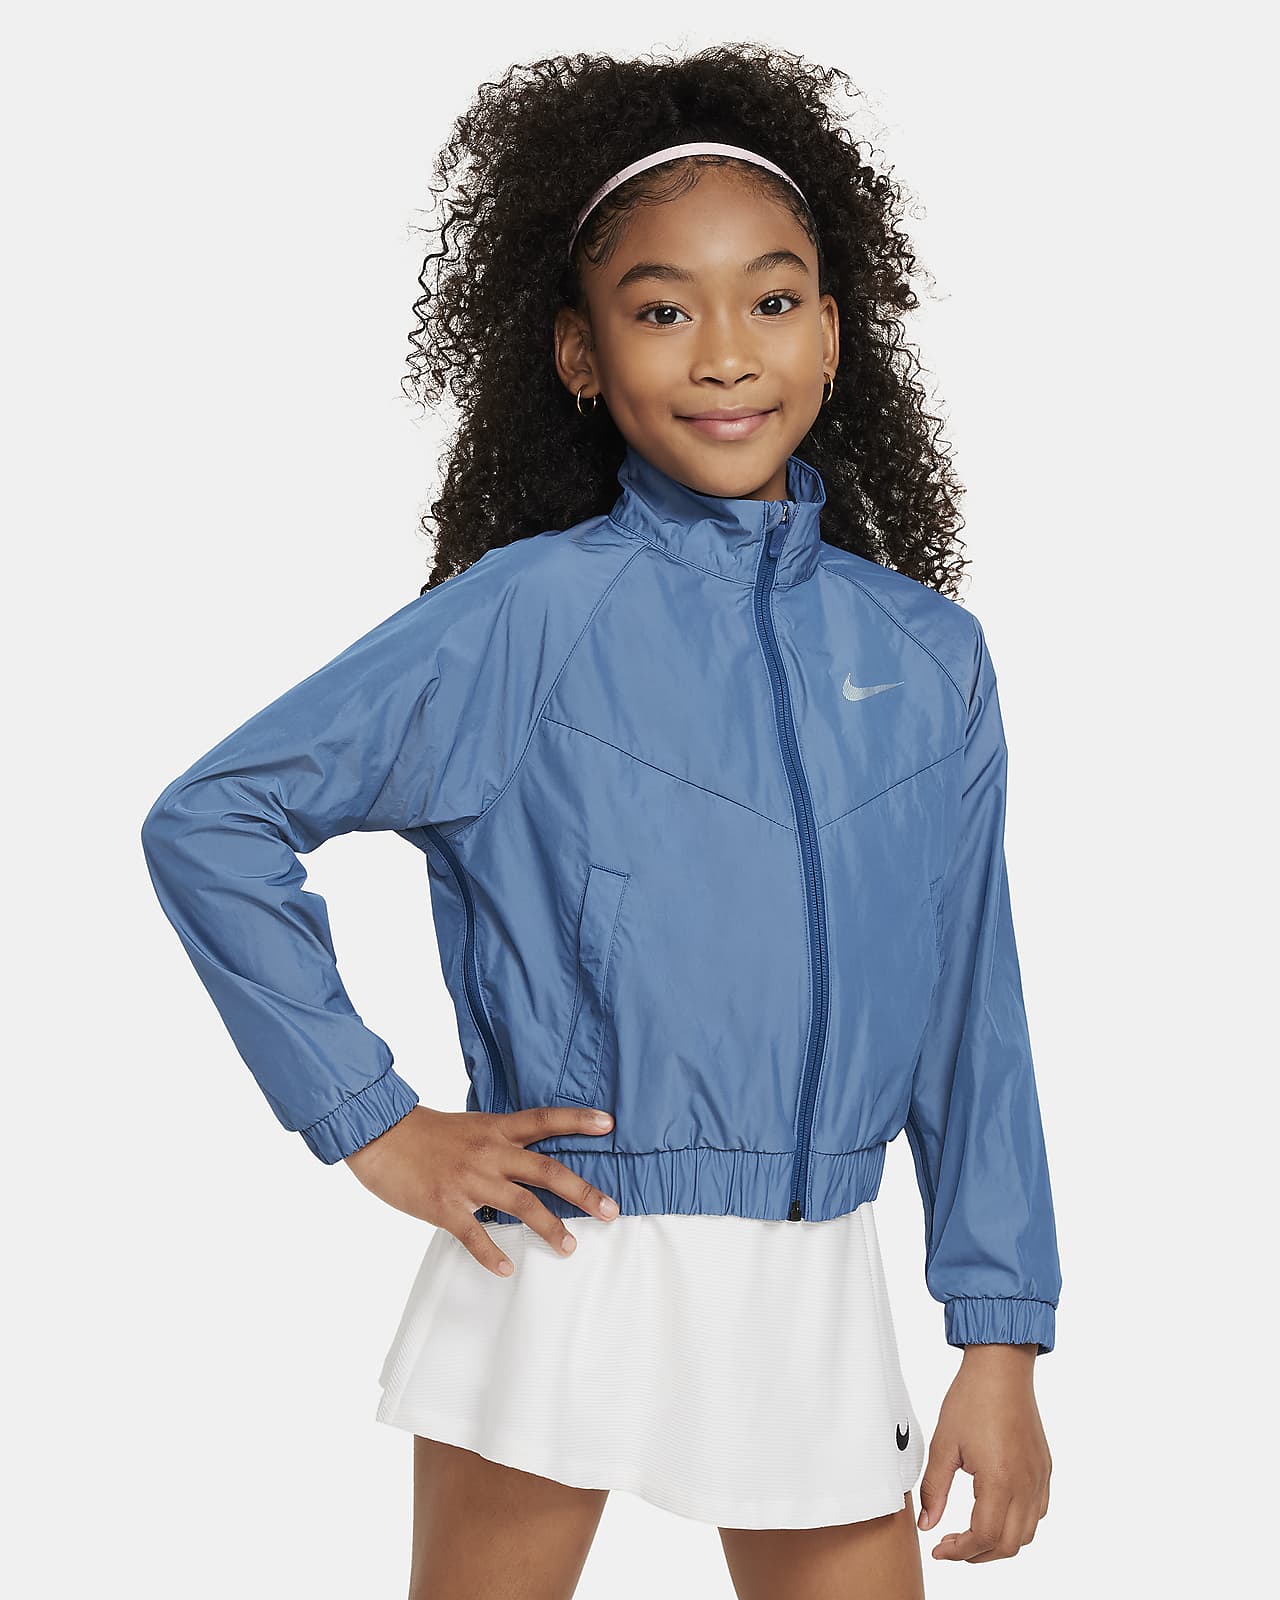 Nike Sportswear Windrunner weite Jacke für ältere Kinder (Mädchen)